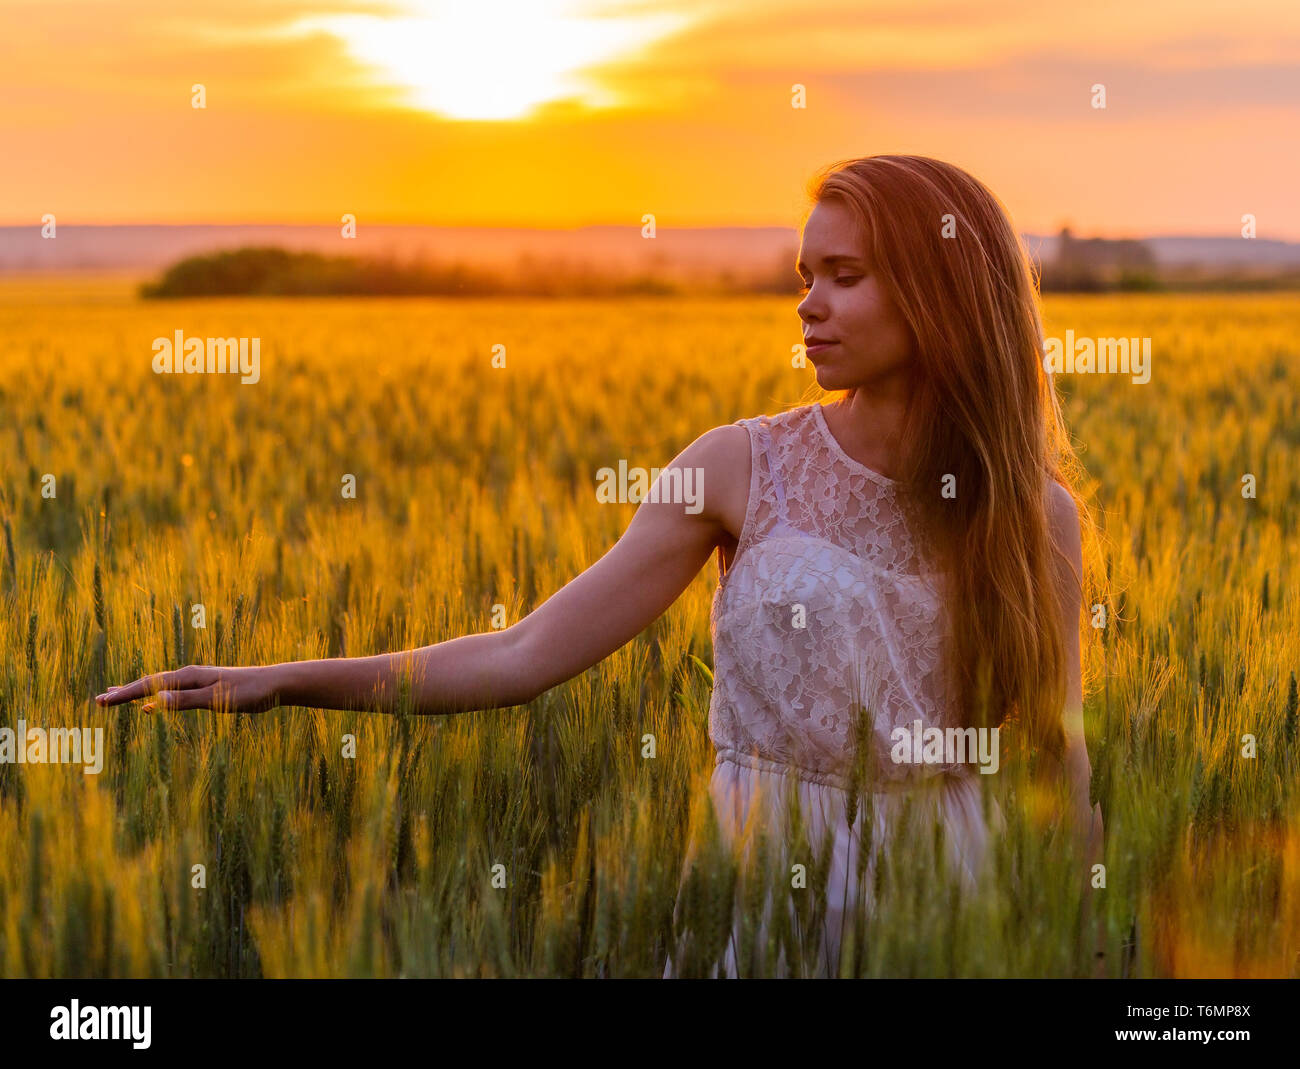 Girl touch des épis de blé au coucher du soleil Banque D'Images